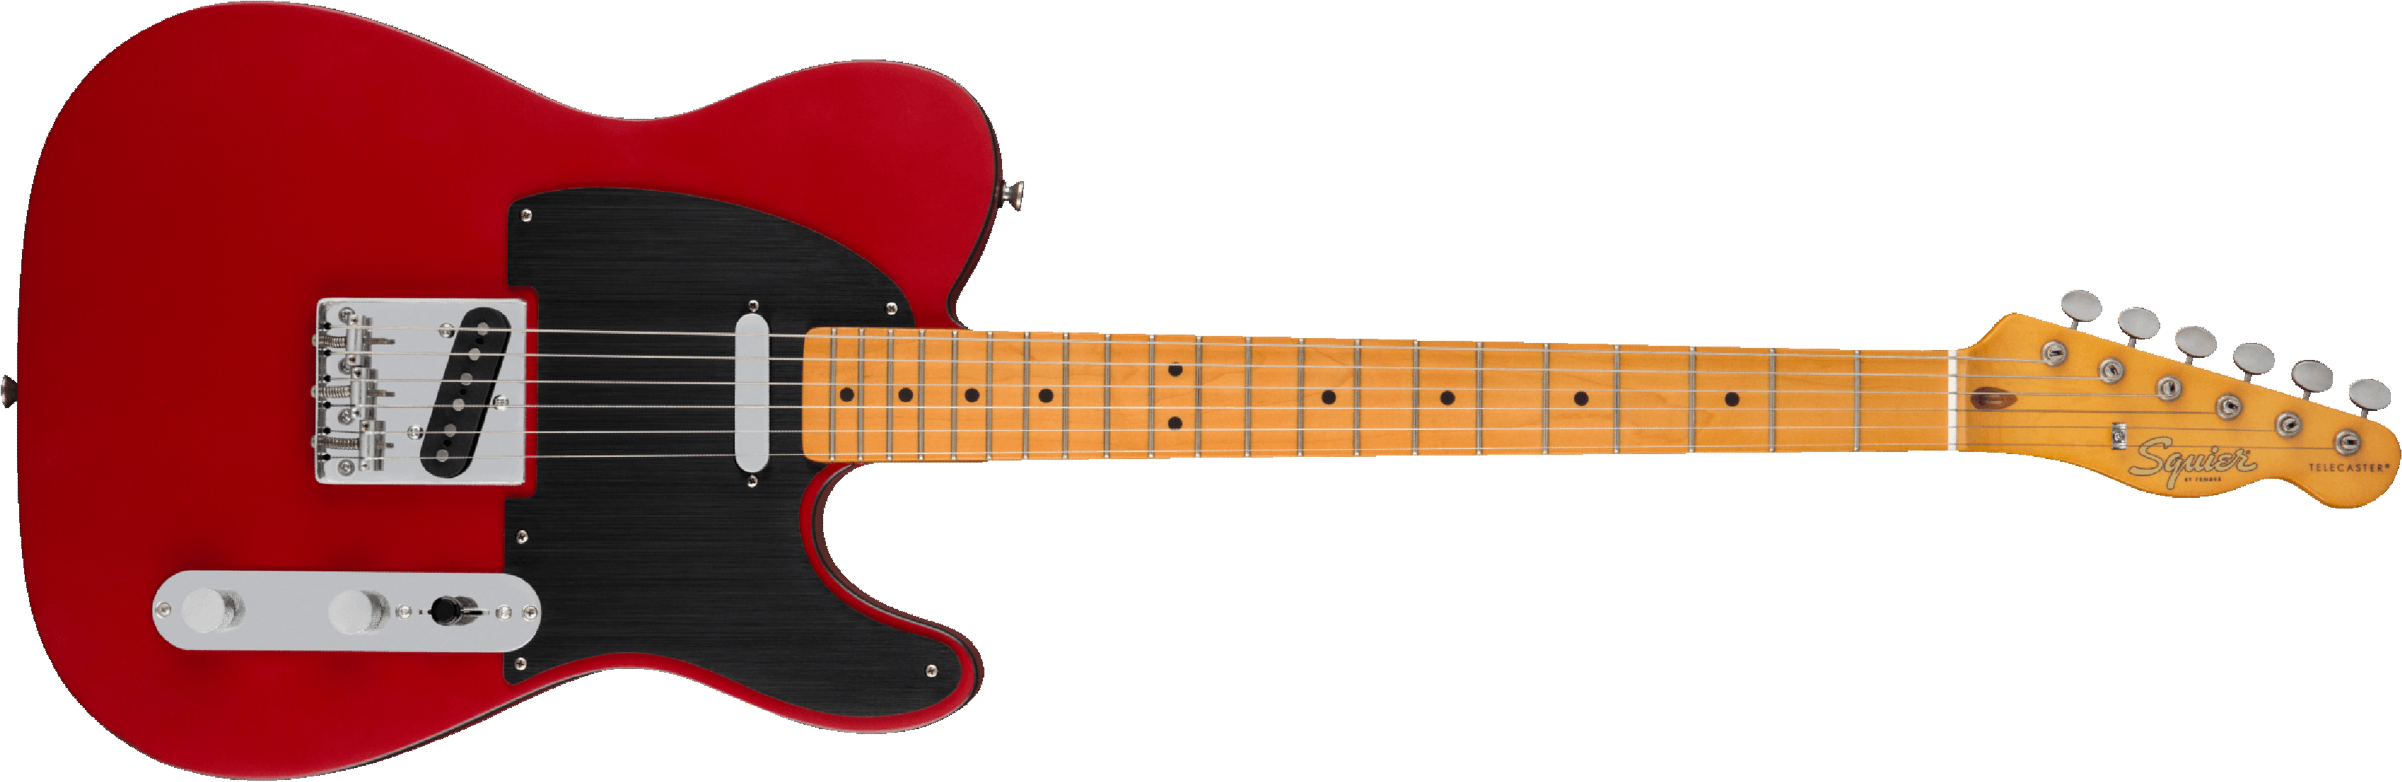 Squier Tele 40th Anniversary Vintage Edition Mn - Satin Dakota Red - E-Gitarre in Teleform - Main picture